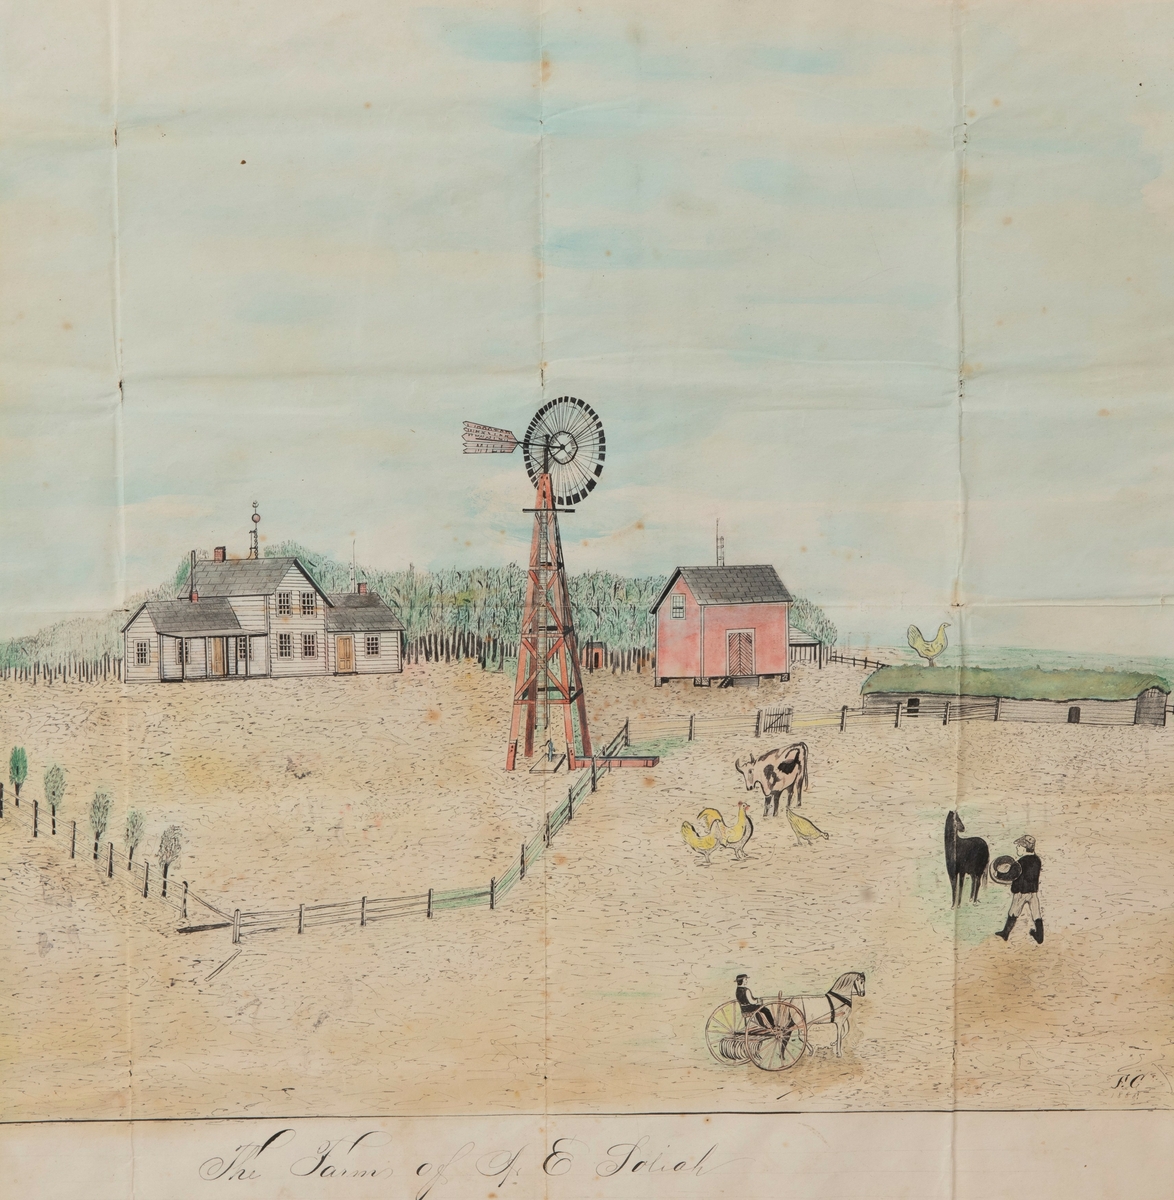 Prospekttegning av A. E. Soliahs farm i Otter Tail County i Minnesota. Penn, blyant og vannfarger på papir. Signert og datert nederst til høyre: F. C. 1888. Bretter i papiret.